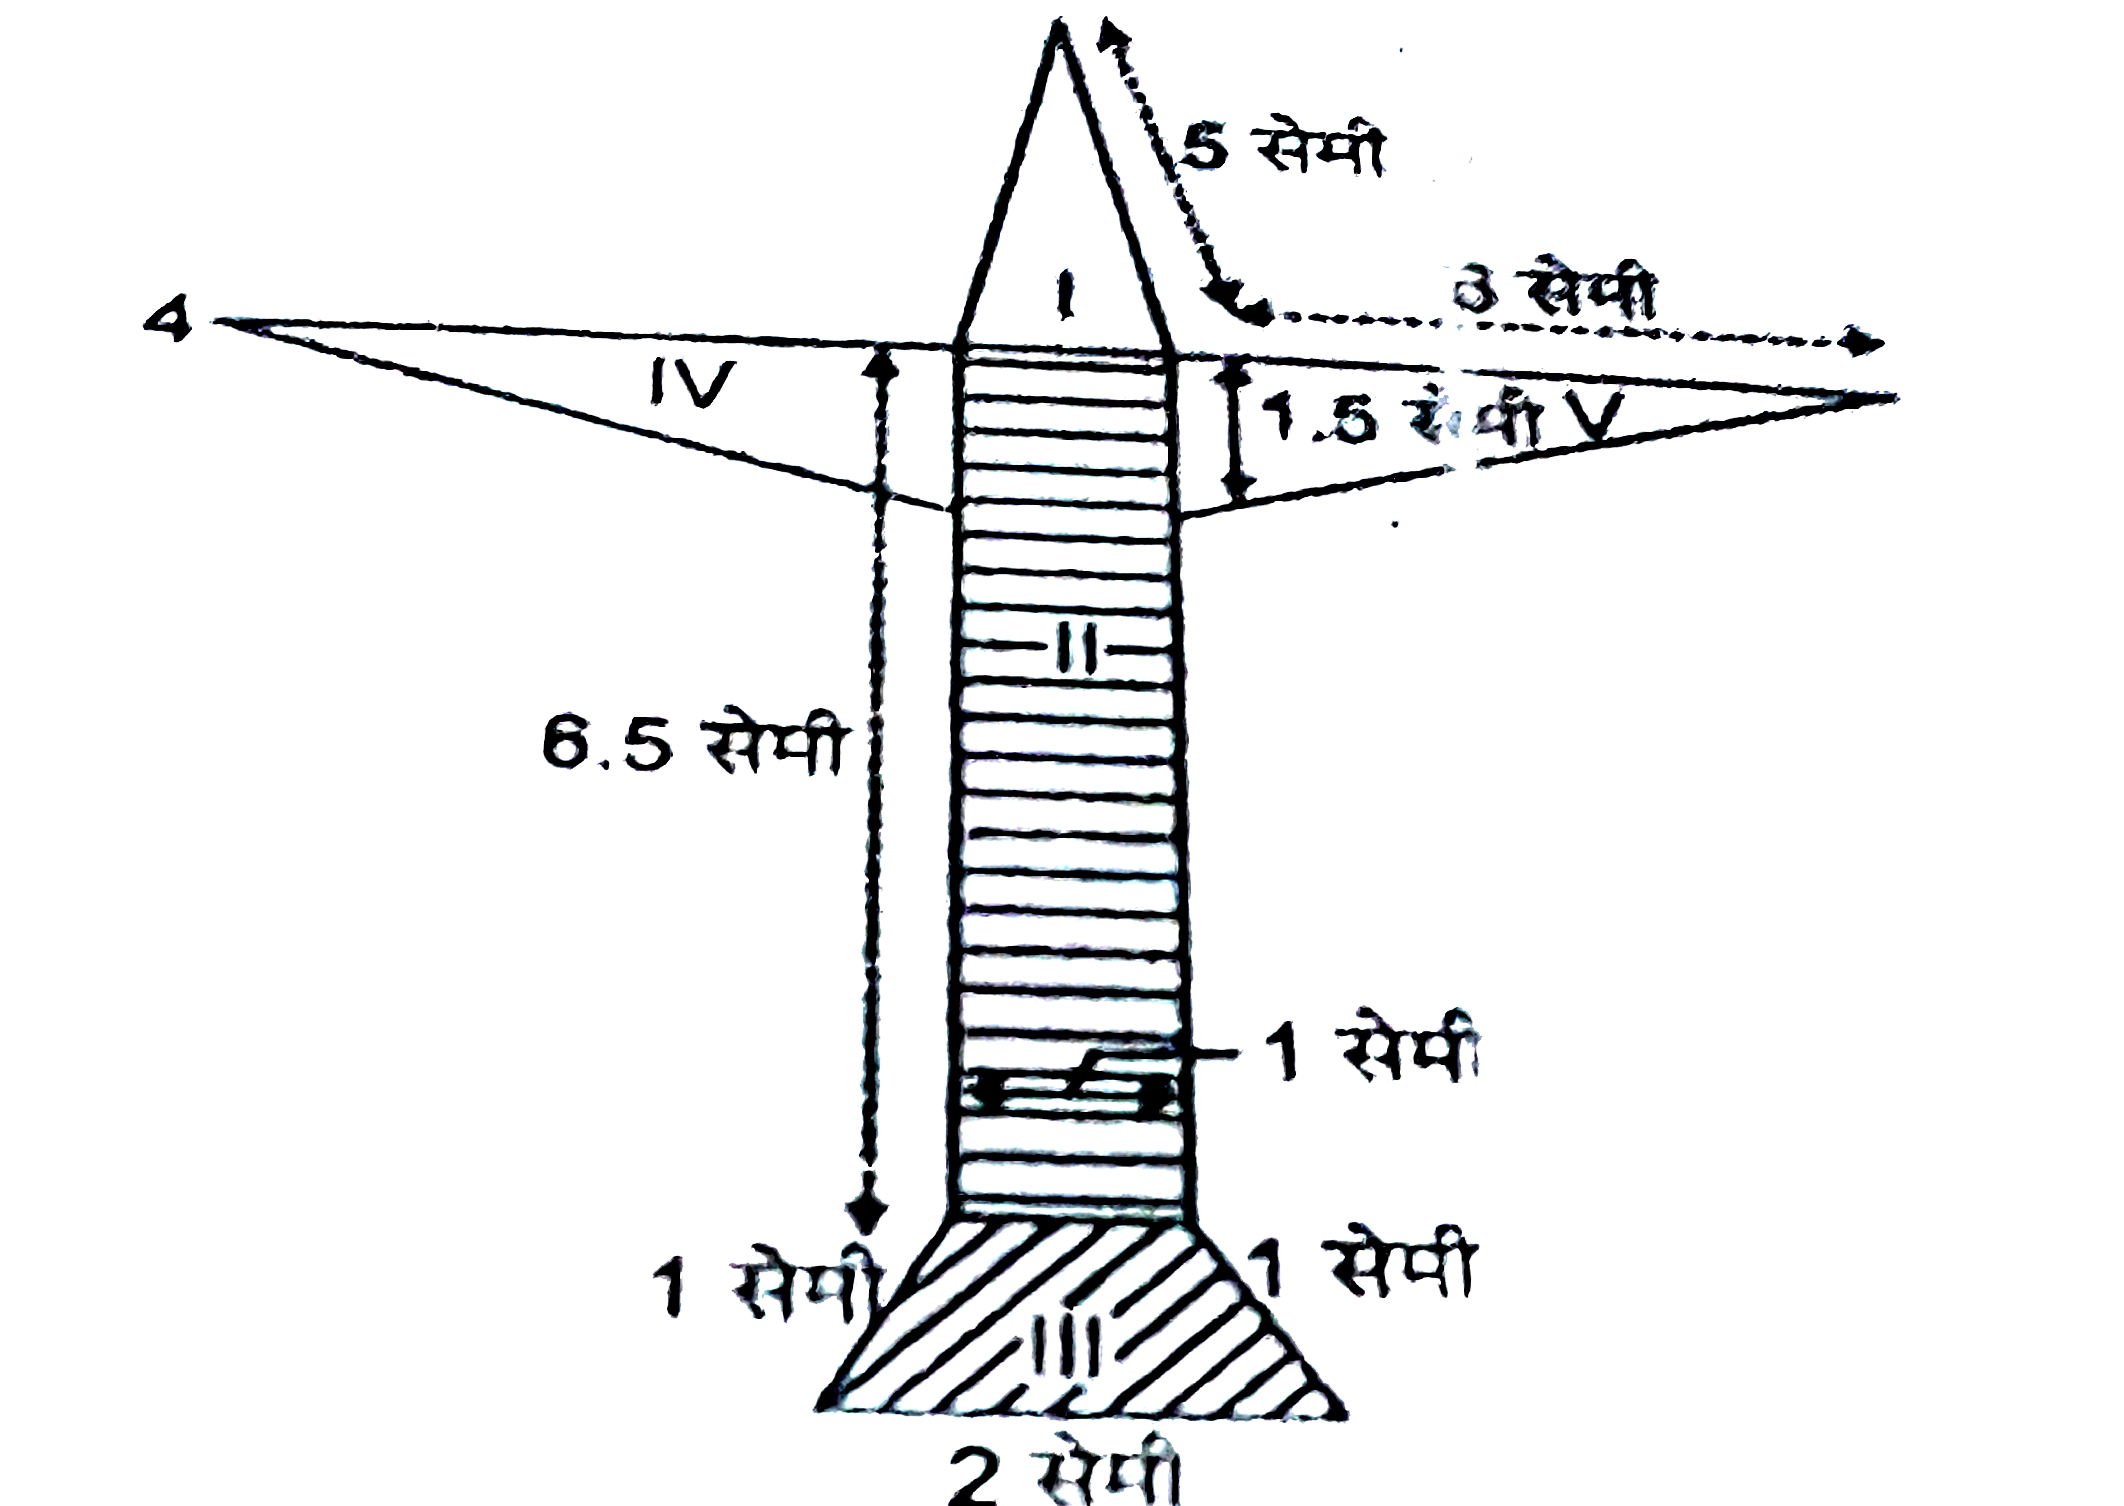 राधा ने एक रंगीन कागज से एक हवाई जहाज का चित्र बनाया, जैसा की आकृति में दिखाया गया है । प्रयोग किए गए कागज का कुल क्षेत्रफल ज्ञात कीजिए ।